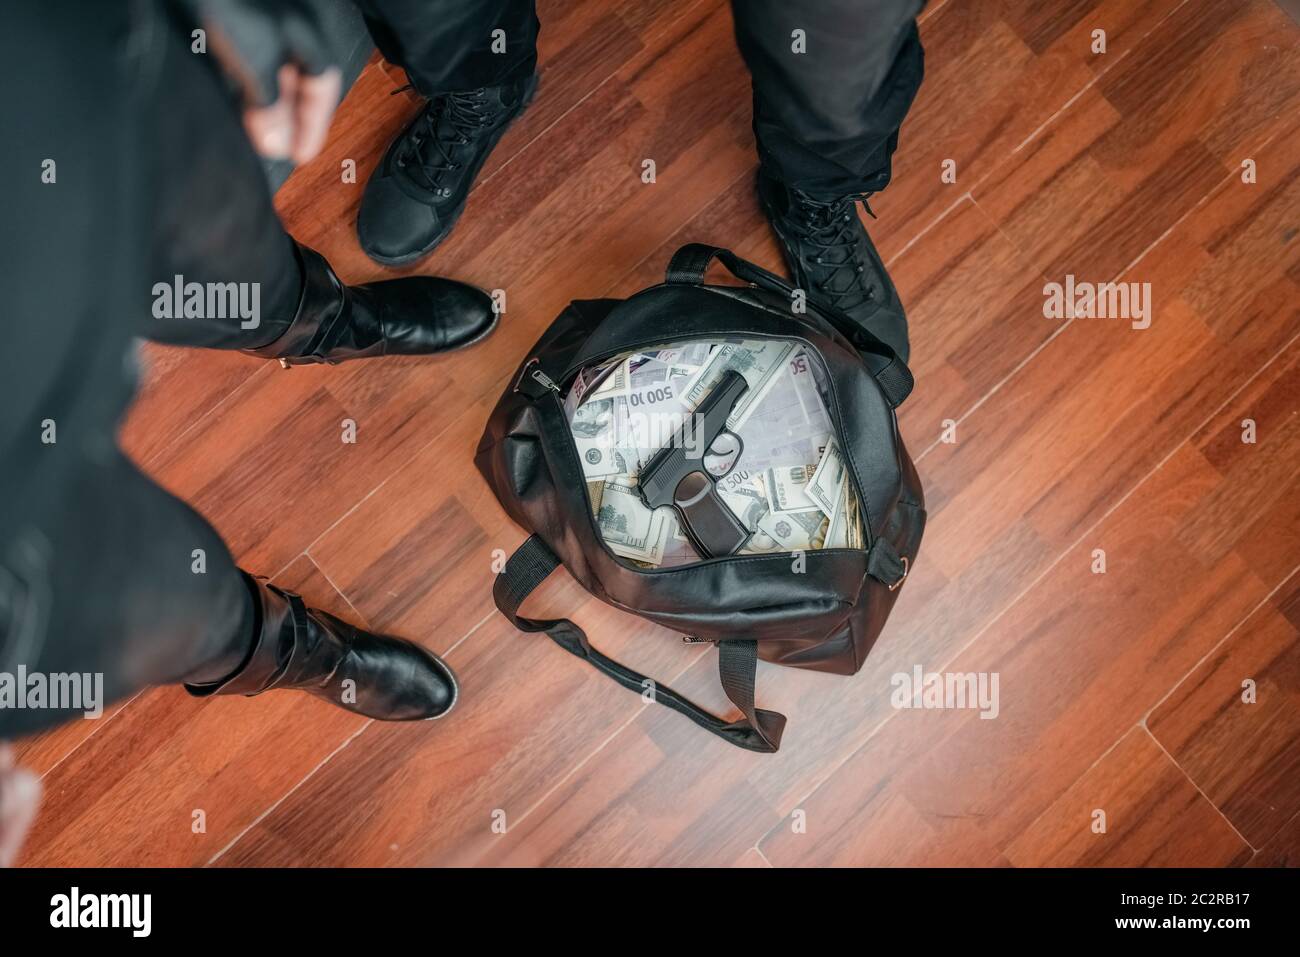 Bankraub, zwei Räuber in schwarzer Uniform hält Tasche mit Geld. Kriminelle  Beruf, Diebstahl Konzept Stockfotografie - Alamy